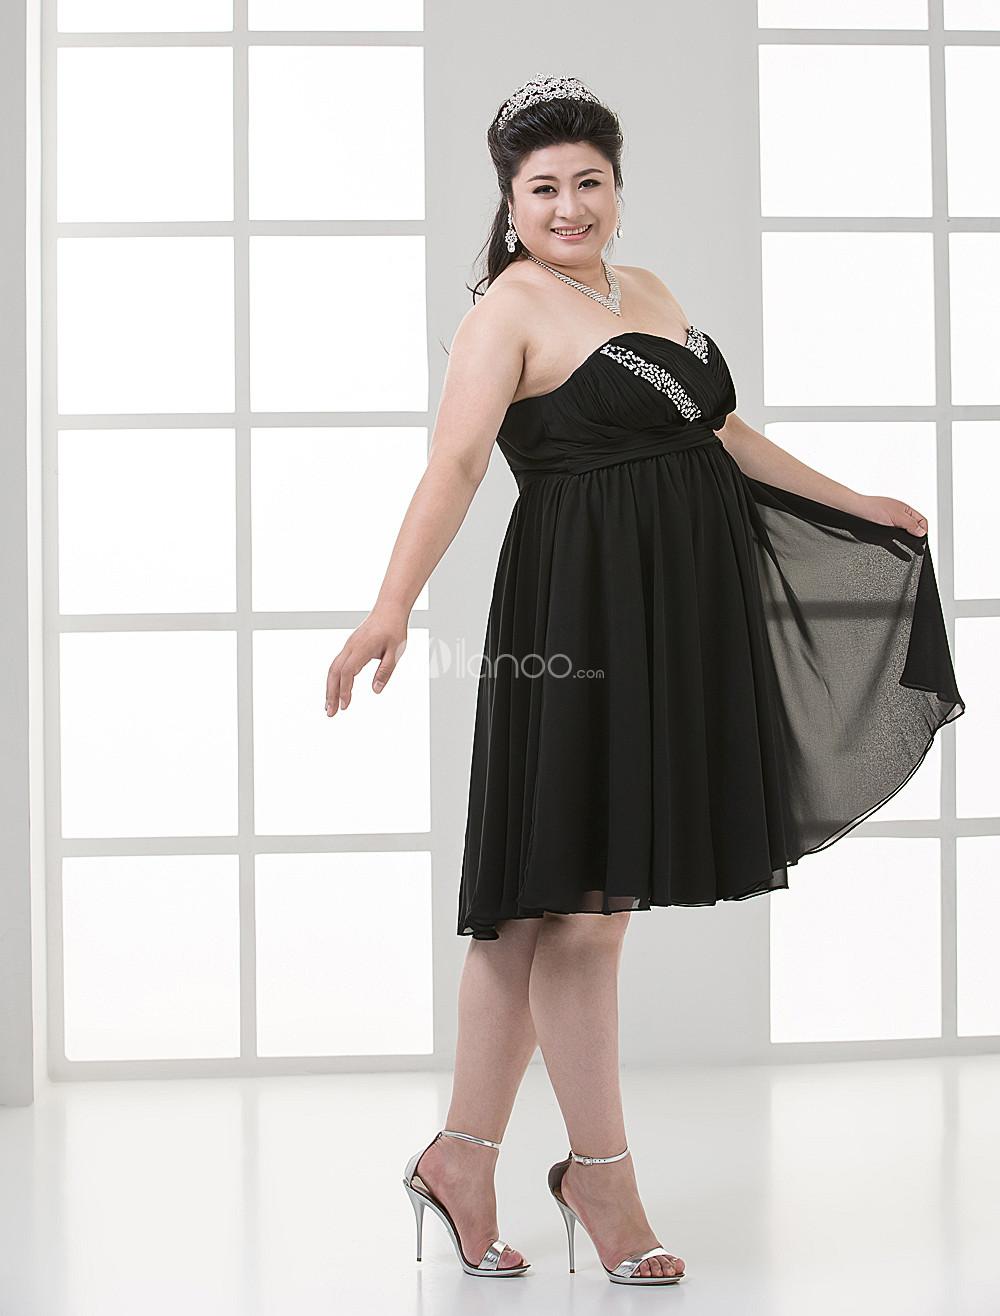 Foto Imperio cintura negro lentejuelas neto amor Plus vestido de fiesta tamaño femenino